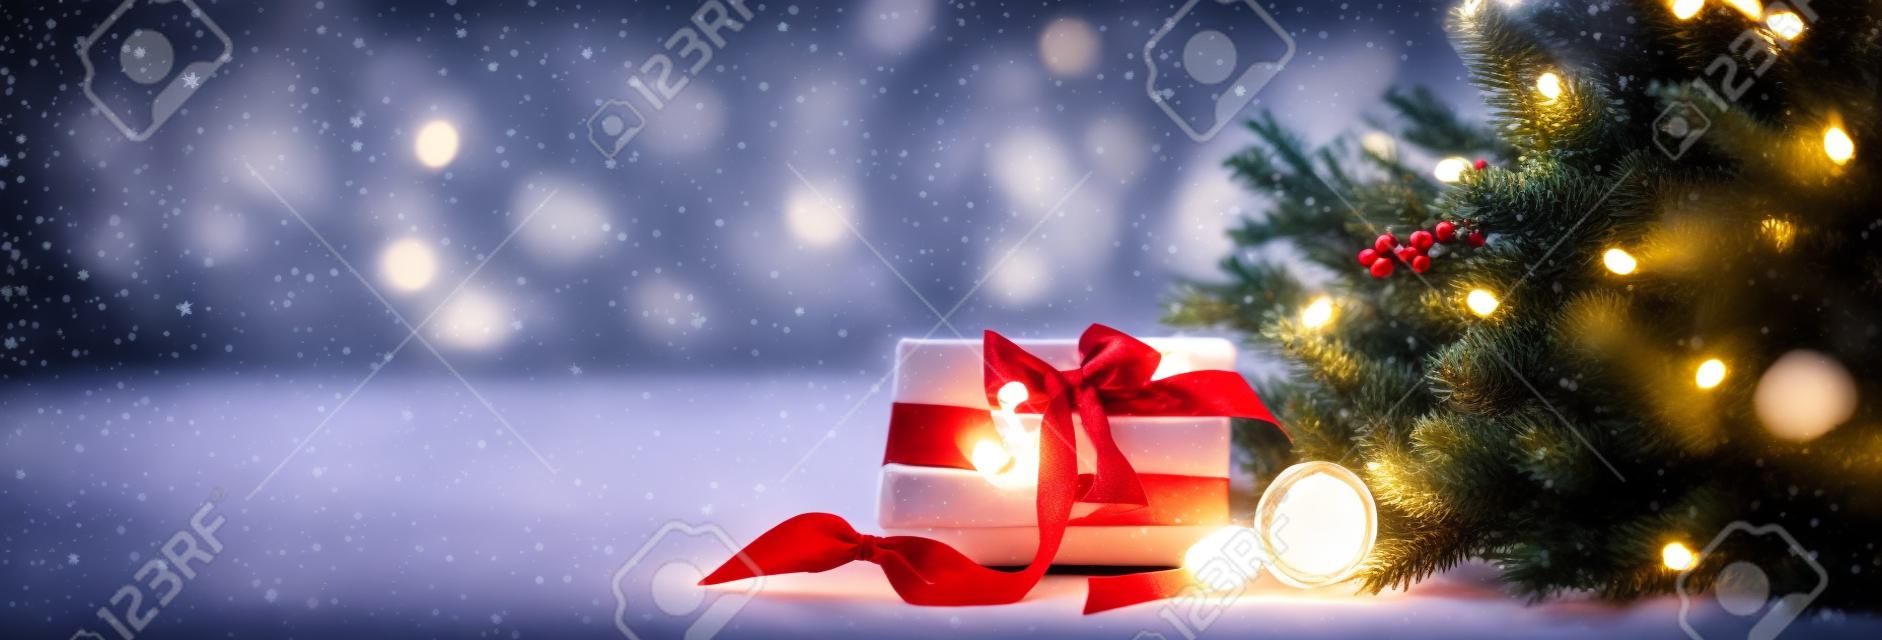 Confort de Noël dans une pièce sur fond clair, avec des lumières et des branches d'un sapin de Noël et un cadeau avec un arc rouge sur la table, espace pour le texte